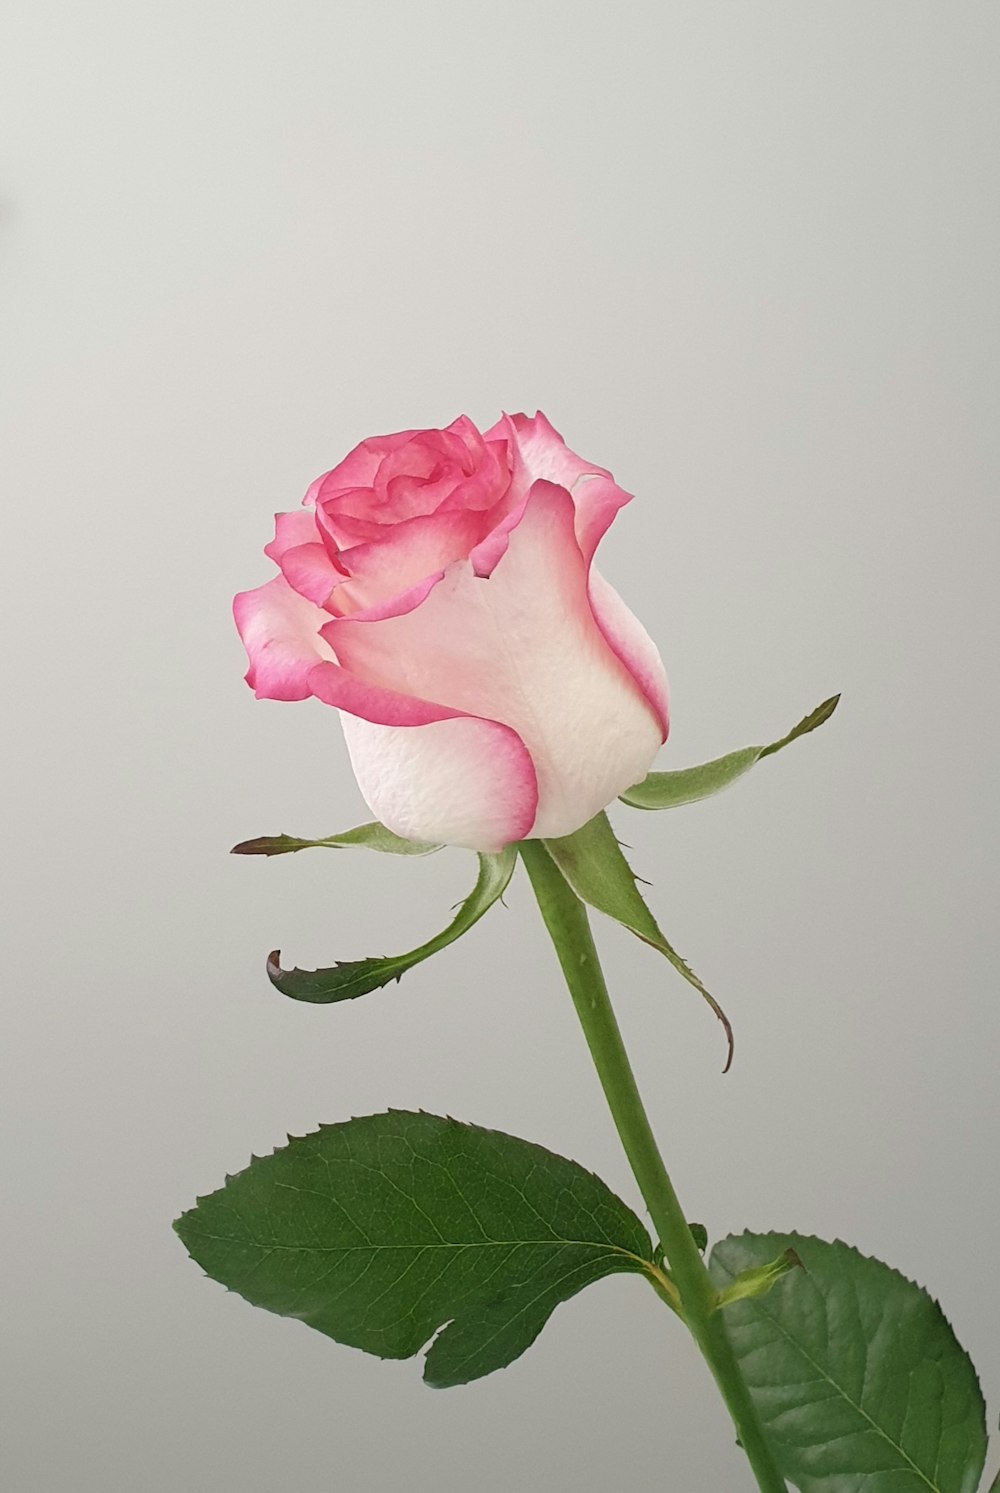 rosa rosa in primo piano fotografia